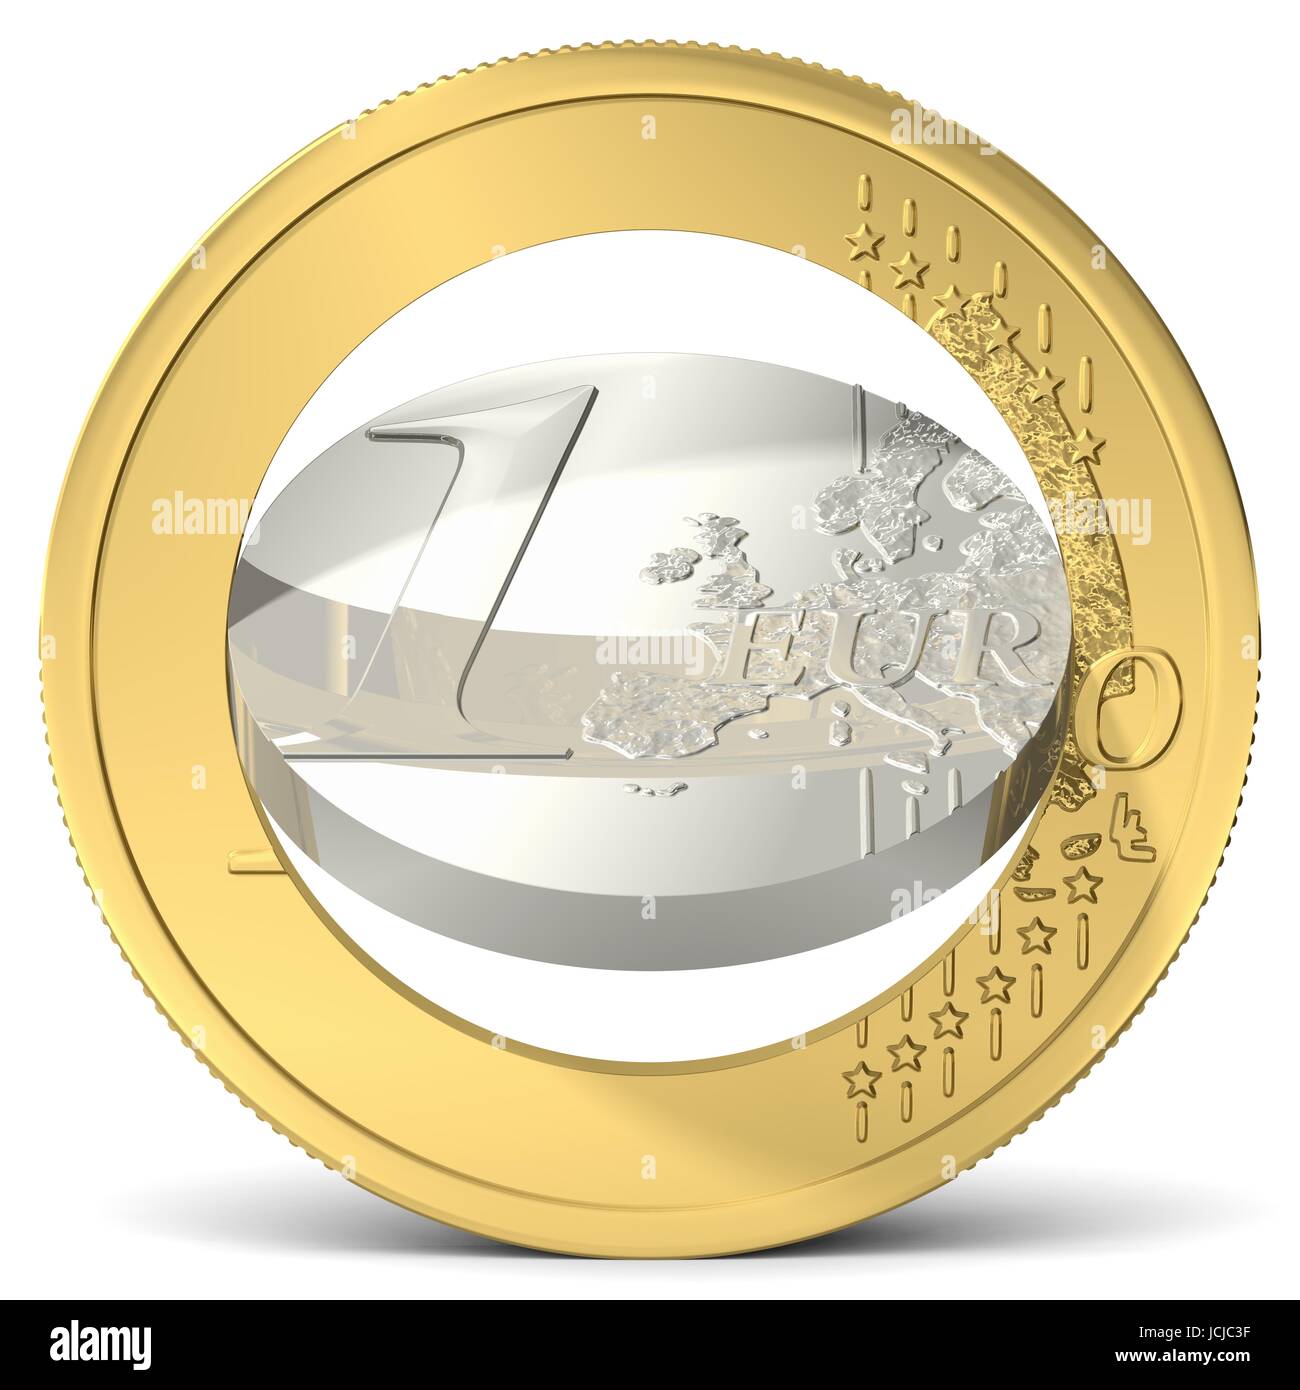 Euro in zwei Teile gebrochen Stock Photo